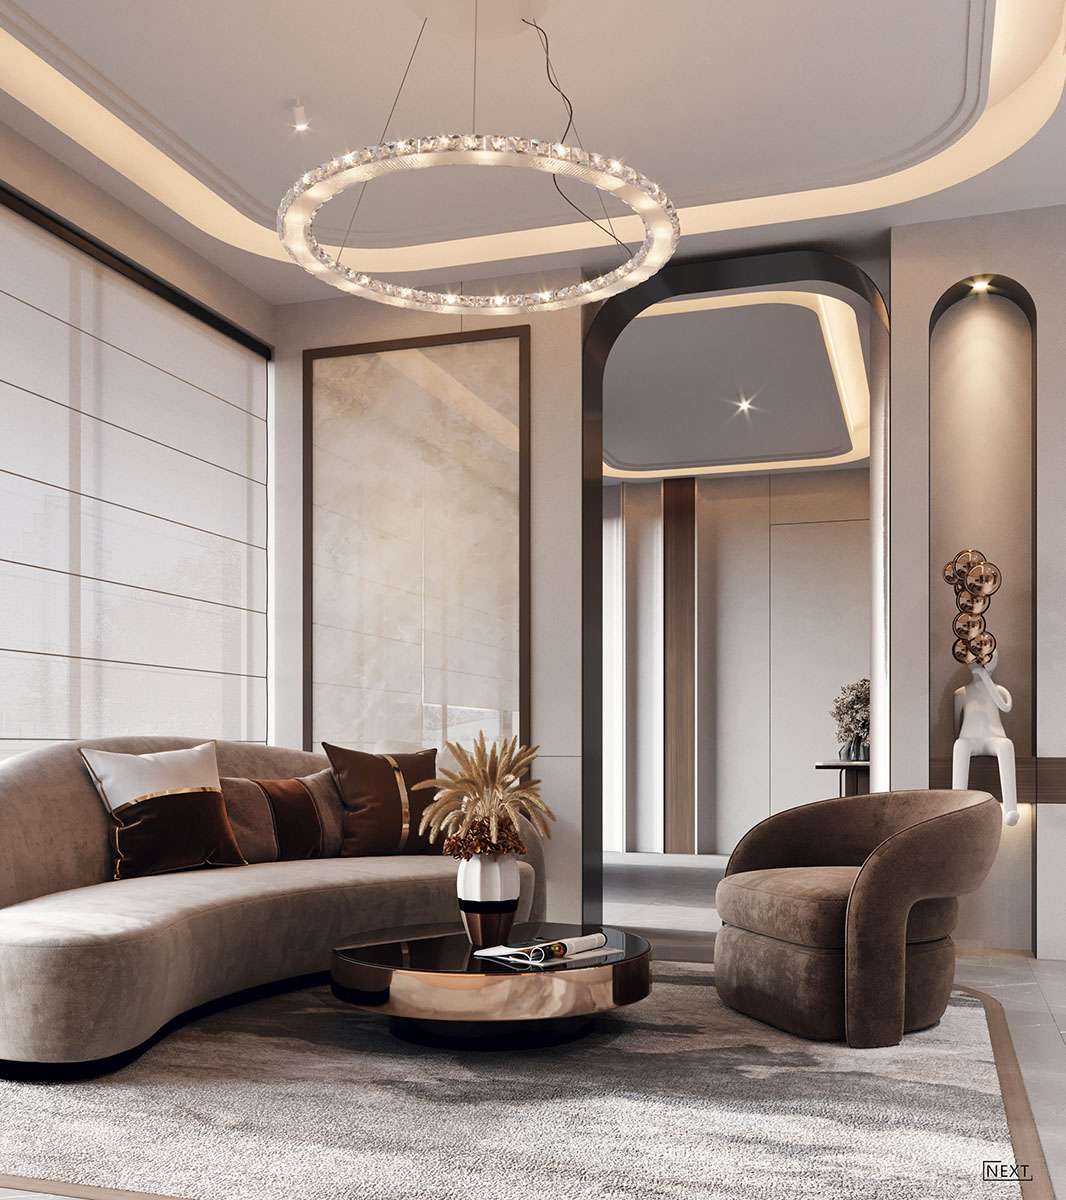 Thiết kế nội thất giúp mang lại vẻ đẹp thẩm mỹ và đảm bảo đầy đủ chức năng tiện nghi khi sử dụng